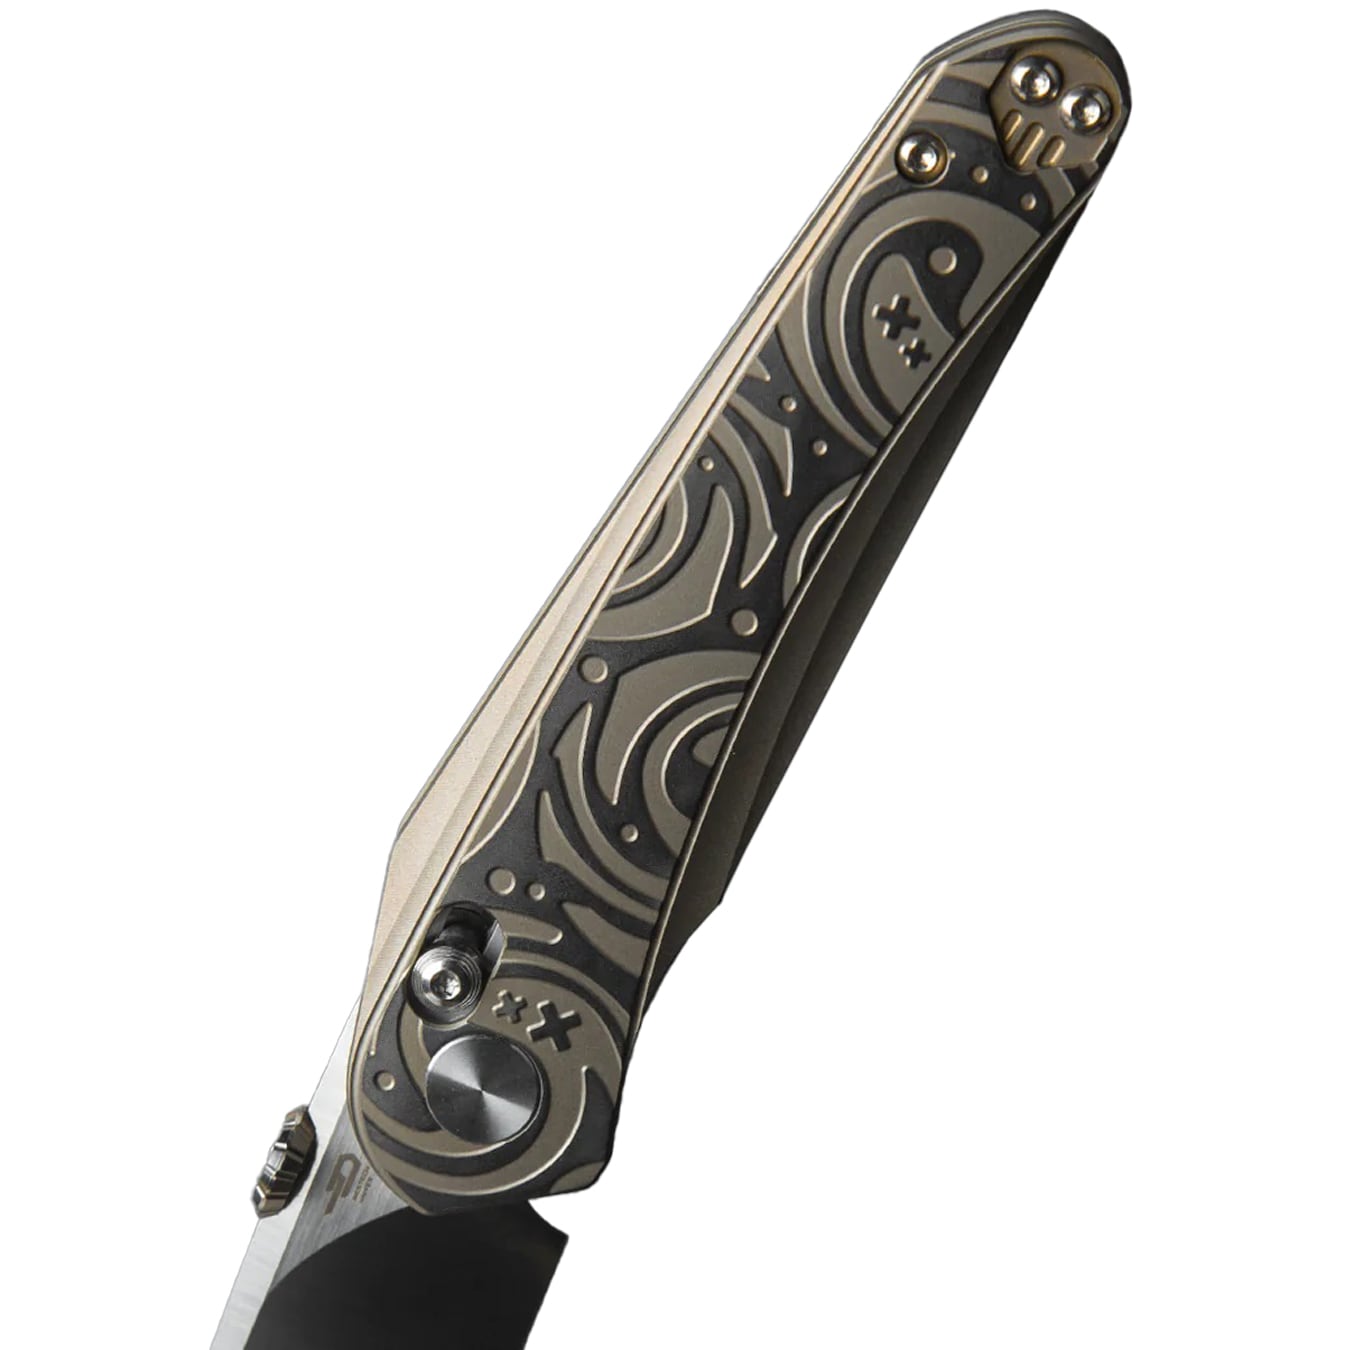 Nóż składany Bestech Knives Mothus - Satin/Light Bronze Titanium